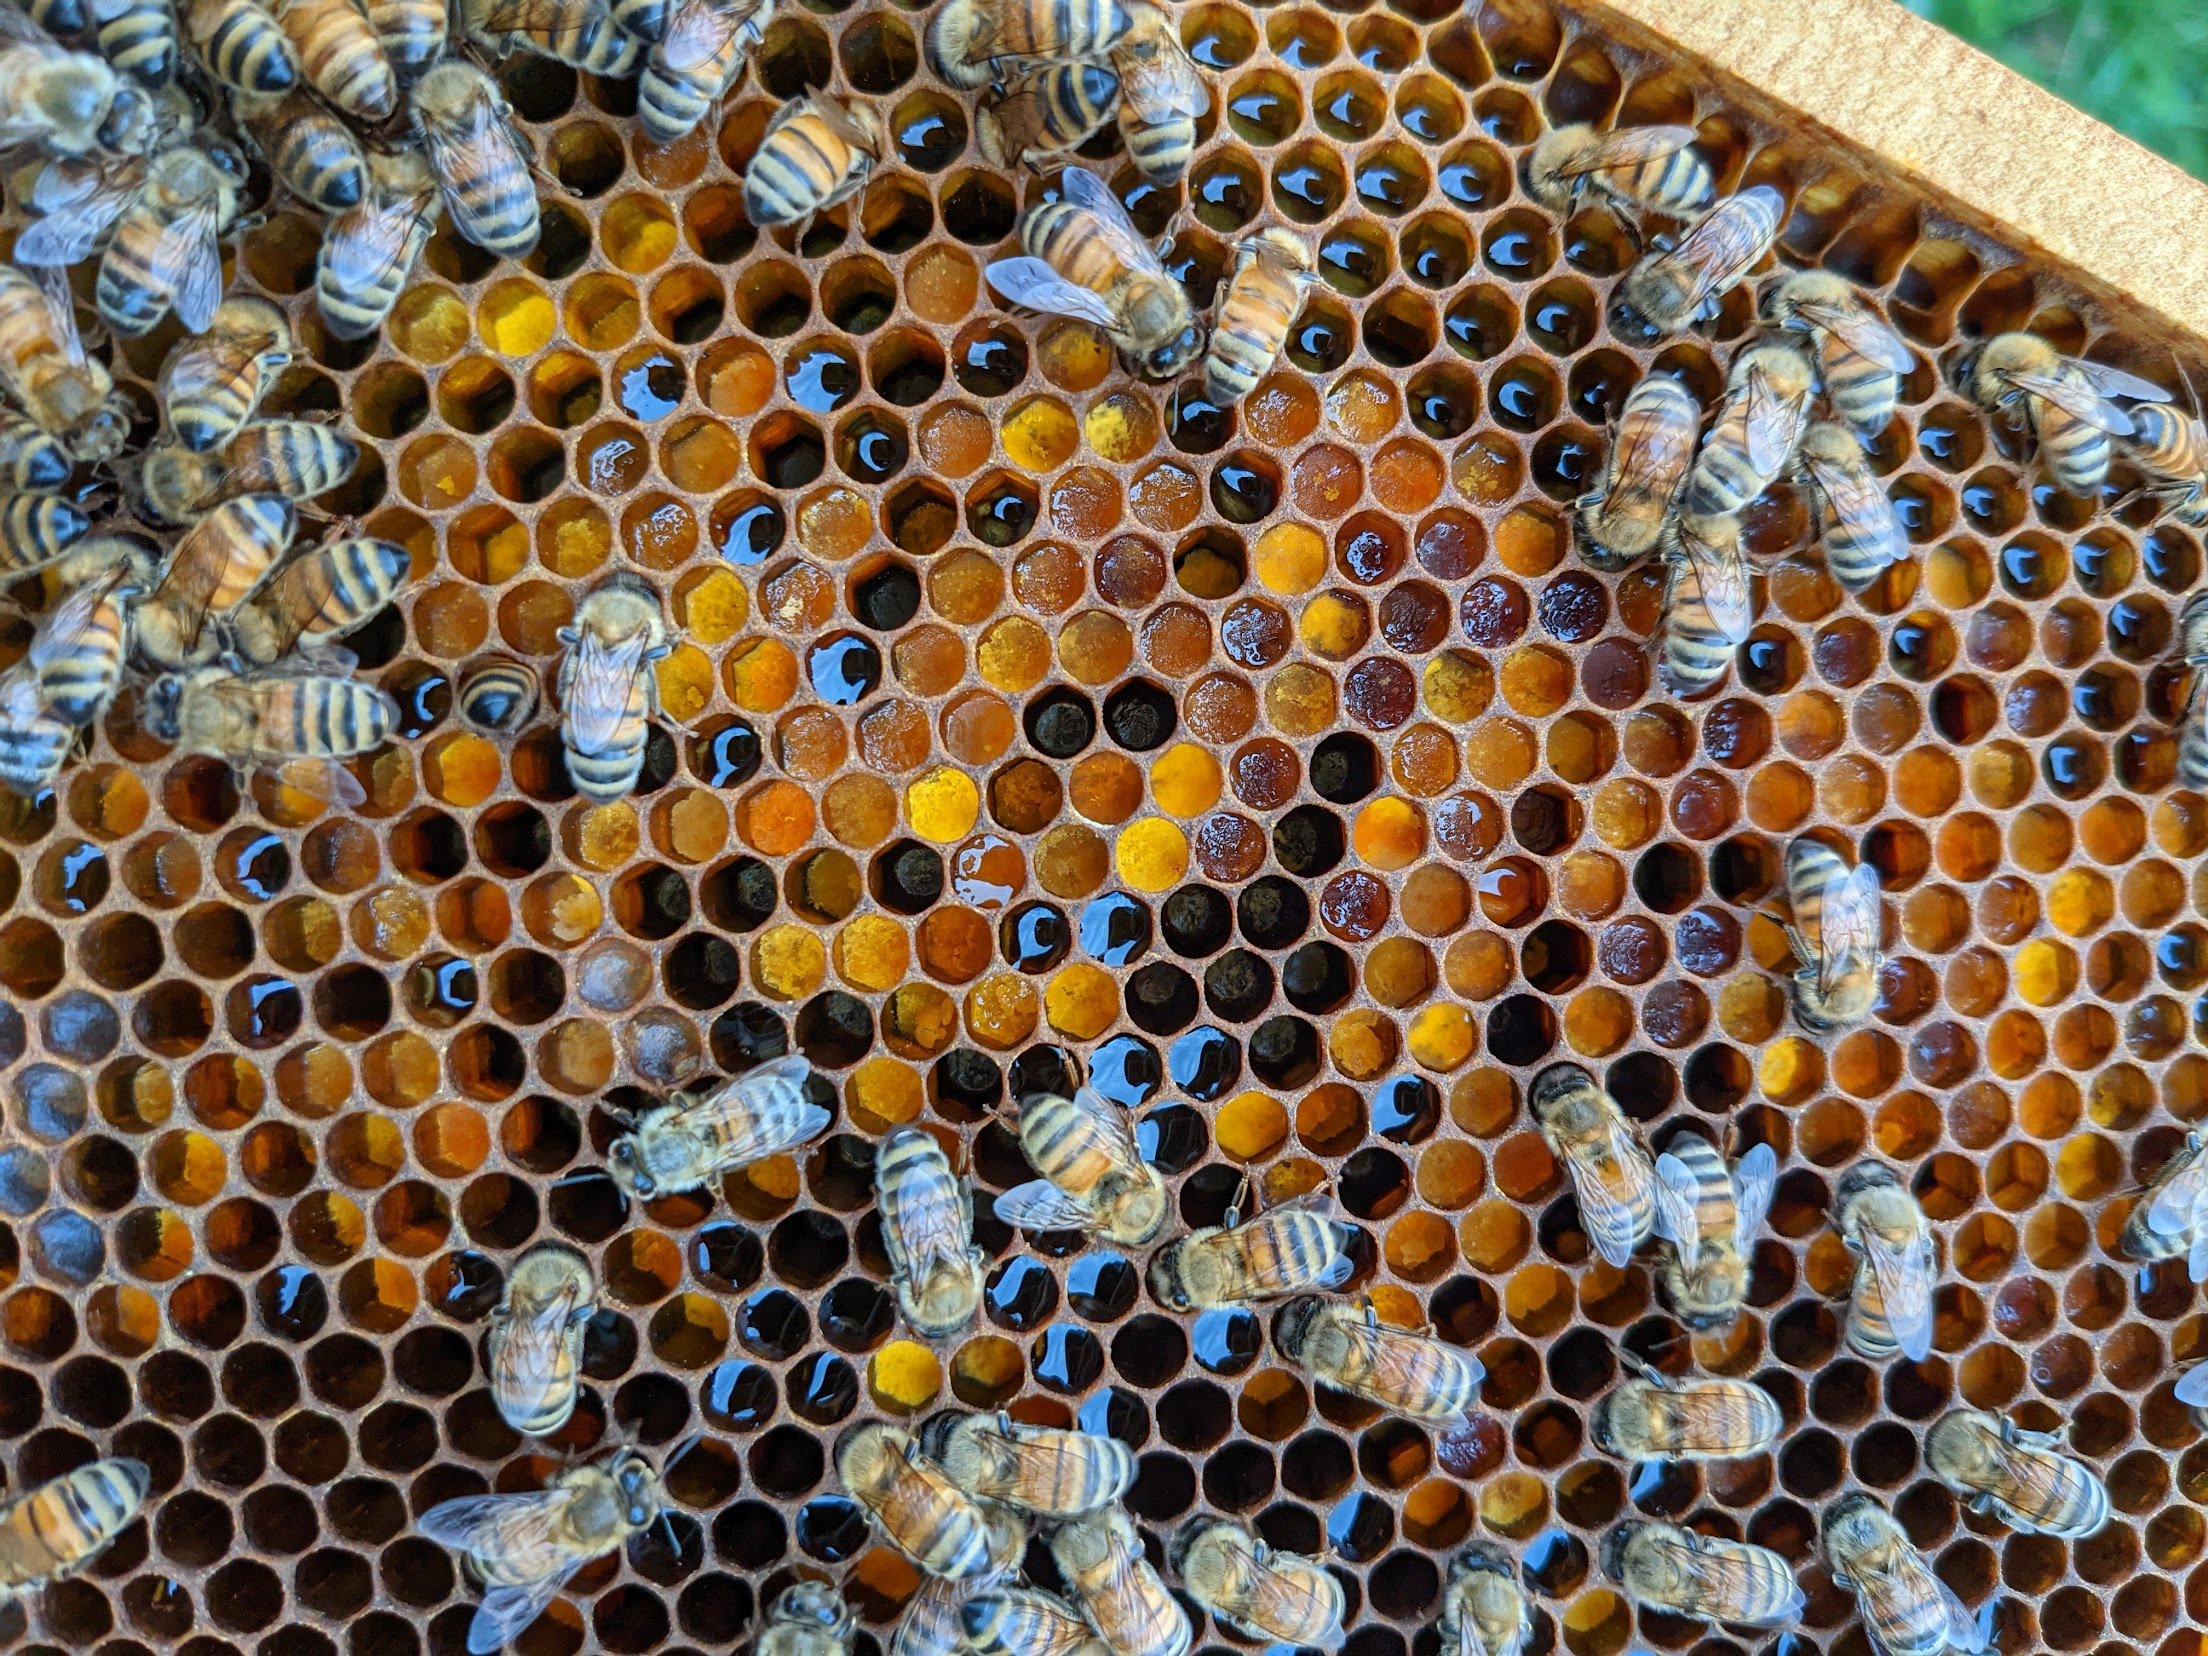 Honeybees — Bee loved lavender